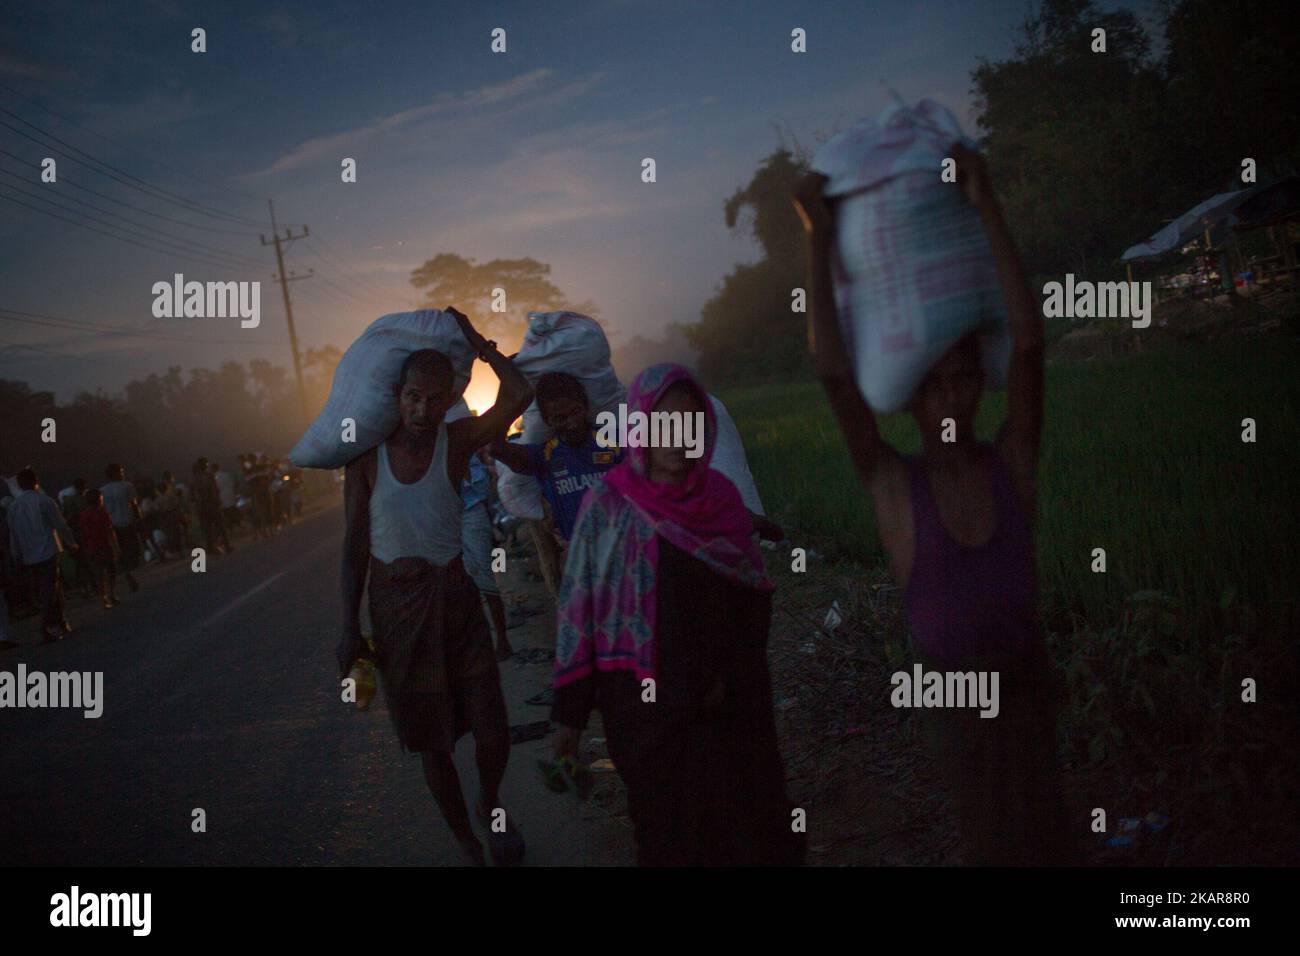 Los refugiados rohingya están regresando al campamento de refugiados de Balukhali después de recoger ayuda. Chittagong, Bangladesh. 15 de septiembre de 2017. Bangladesh utilizará tropas para entregar ayuda extranjera a la ciudad fronteriza que ha sido abrumada por los refugiados musulmanes rohingya de Myanmar, anunciaron las autoridades a finales de septiembre de 14. La medida es consecuencia de las críticas de las condiciones caóticas en las que se han entregado suministros de socorro en los enormes campamentos situados alrededor de Cox's Bazar, a los que han llegado unos 389.000 rohingya del estado de Rakhine en Myanmar desde agosto de 25. (Foto de Turjoy Chowdhury/NurPhoto) Foto de stock